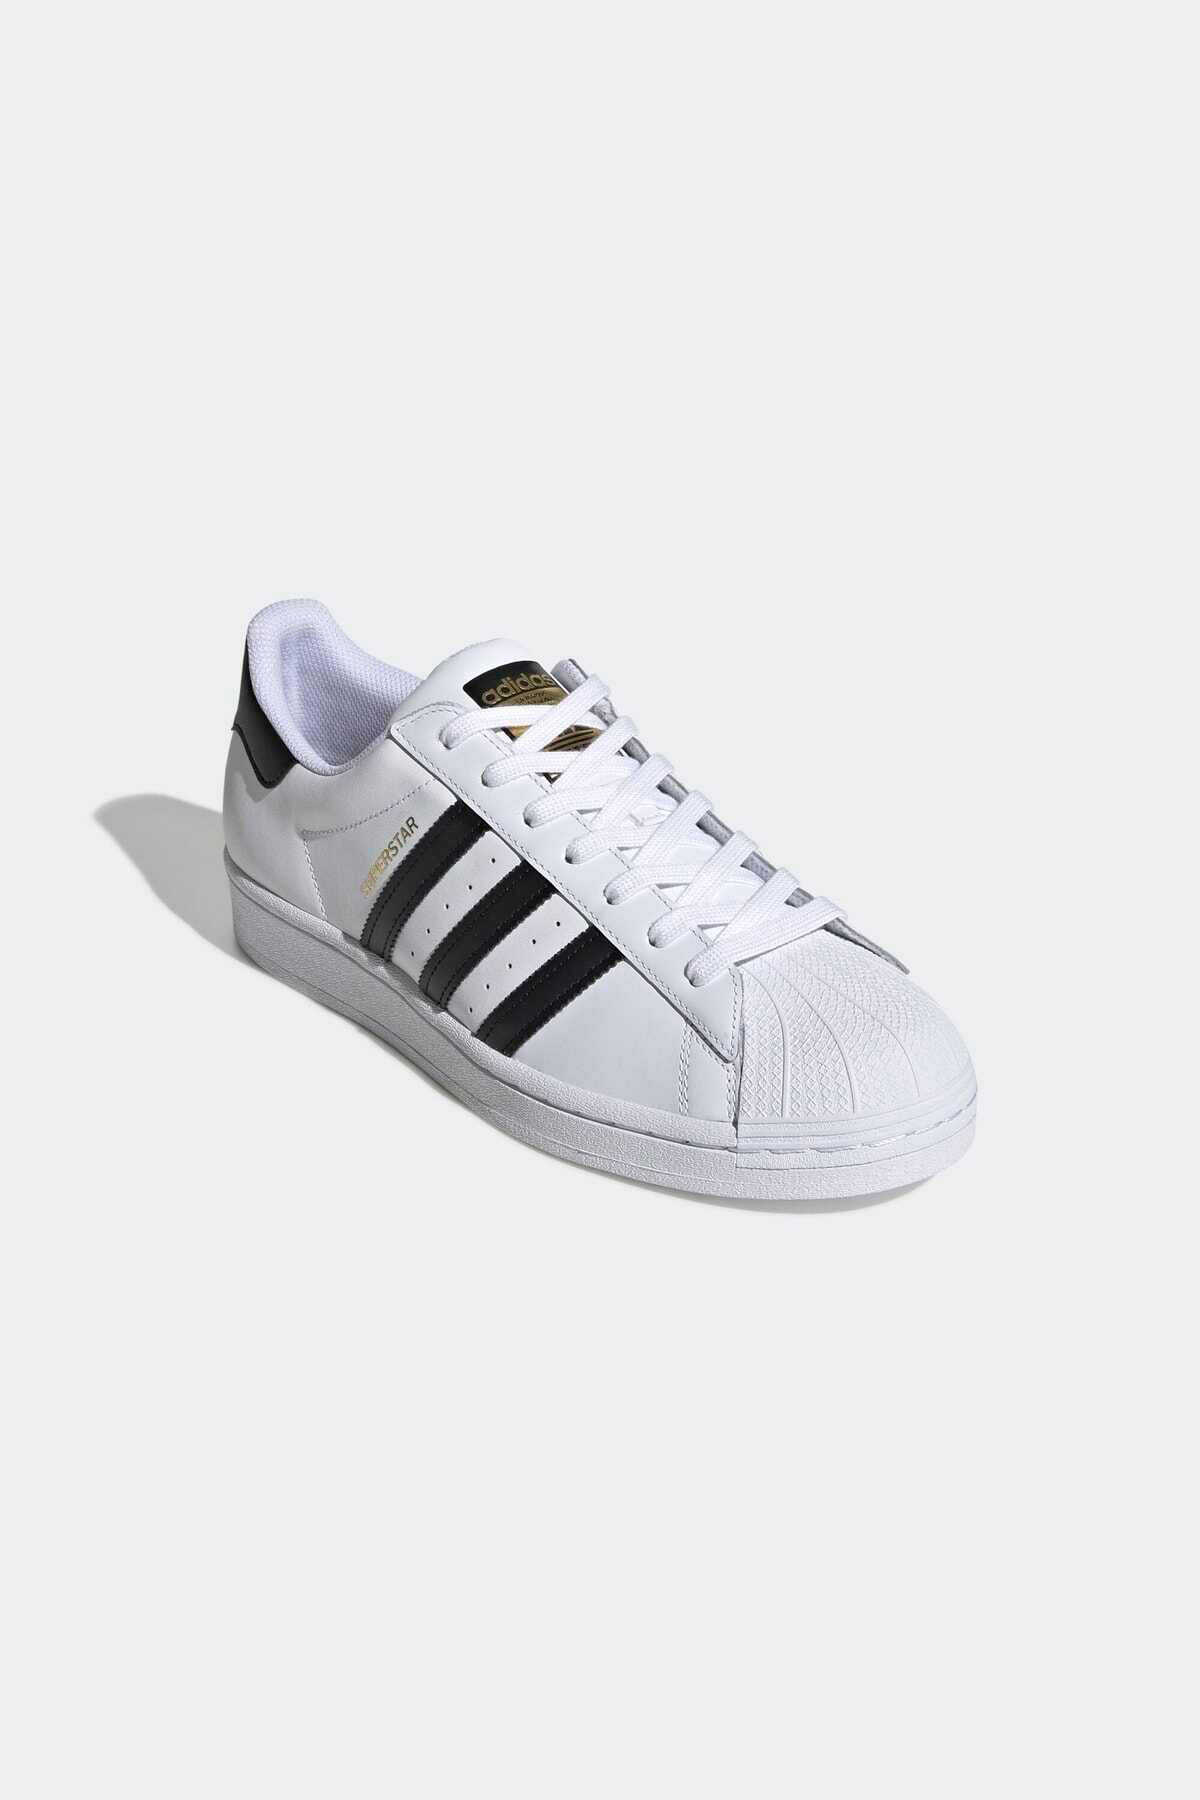 کفش تنیس یونیسکس سفید مشکی برند adidas 